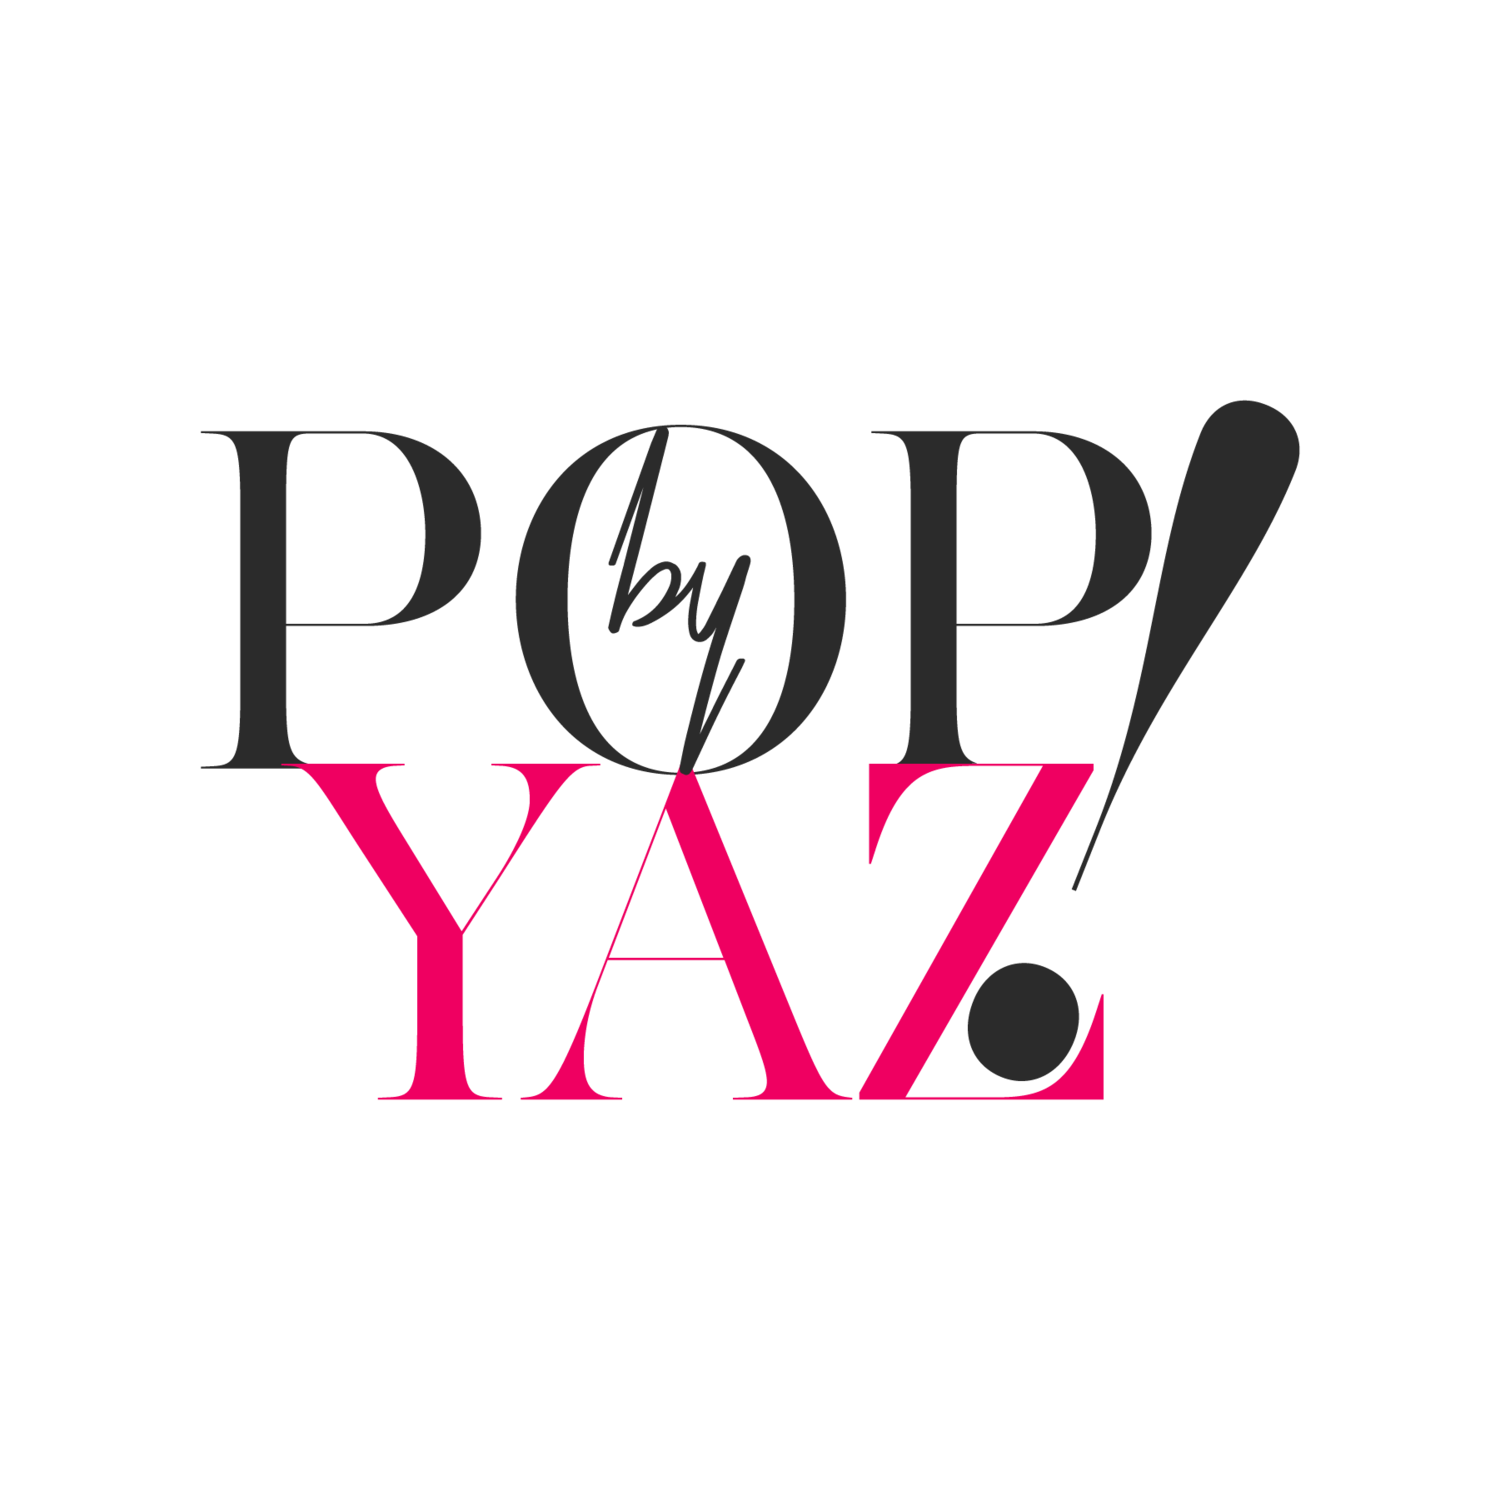 POP! by Yaz